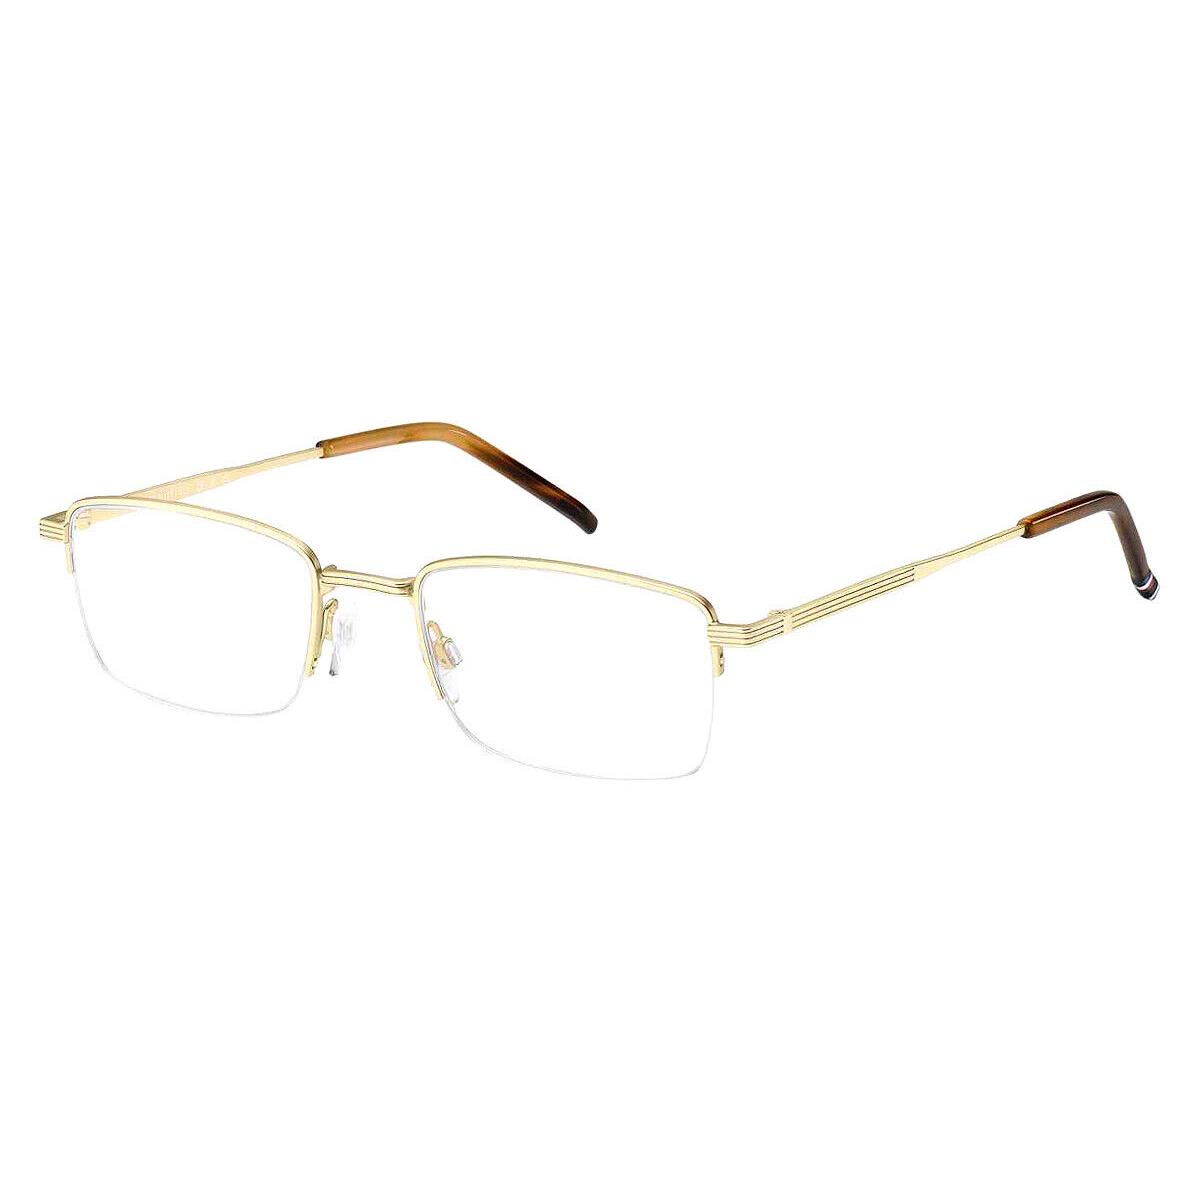 Tommy Hilfiger Thf Eyeglasses Men Matte Light Gold 52mm - Frame: Matte Light Gold, Lens: Demo